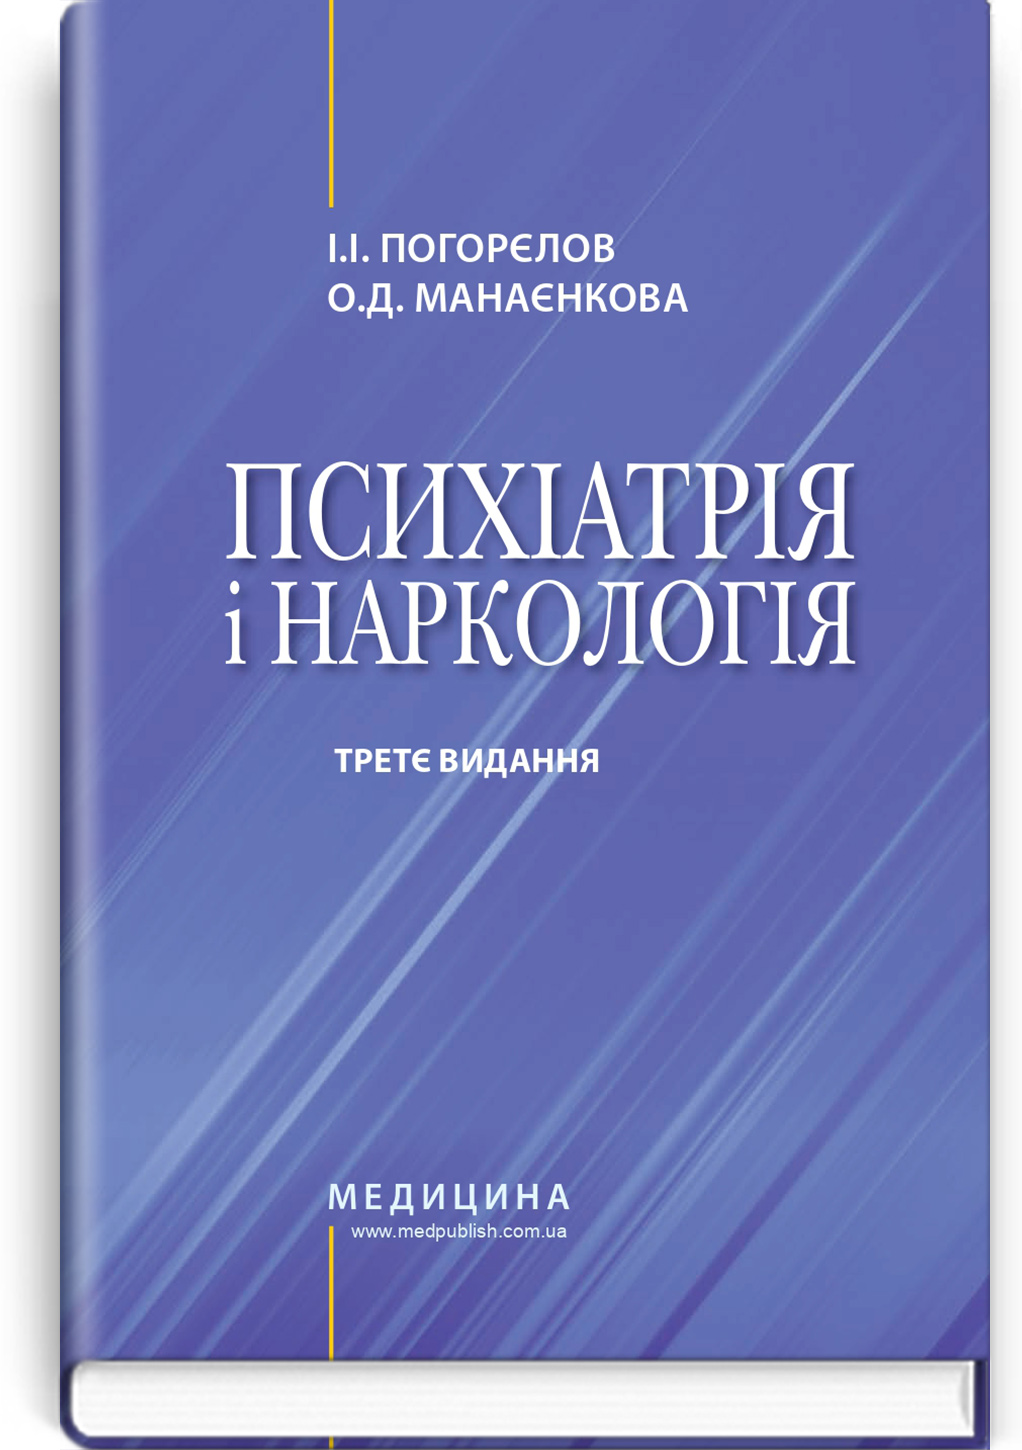 Психіатрія і наркологія: підручник / І.І. Погорєлов, О.Д. Манаєнкова. — 3-є видання